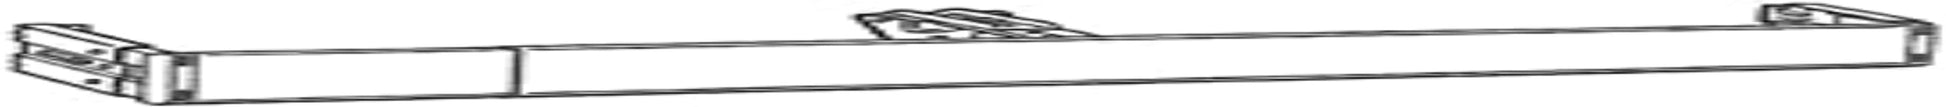 Kirsch Superfine Traverse Rods, Center Draw 38-66